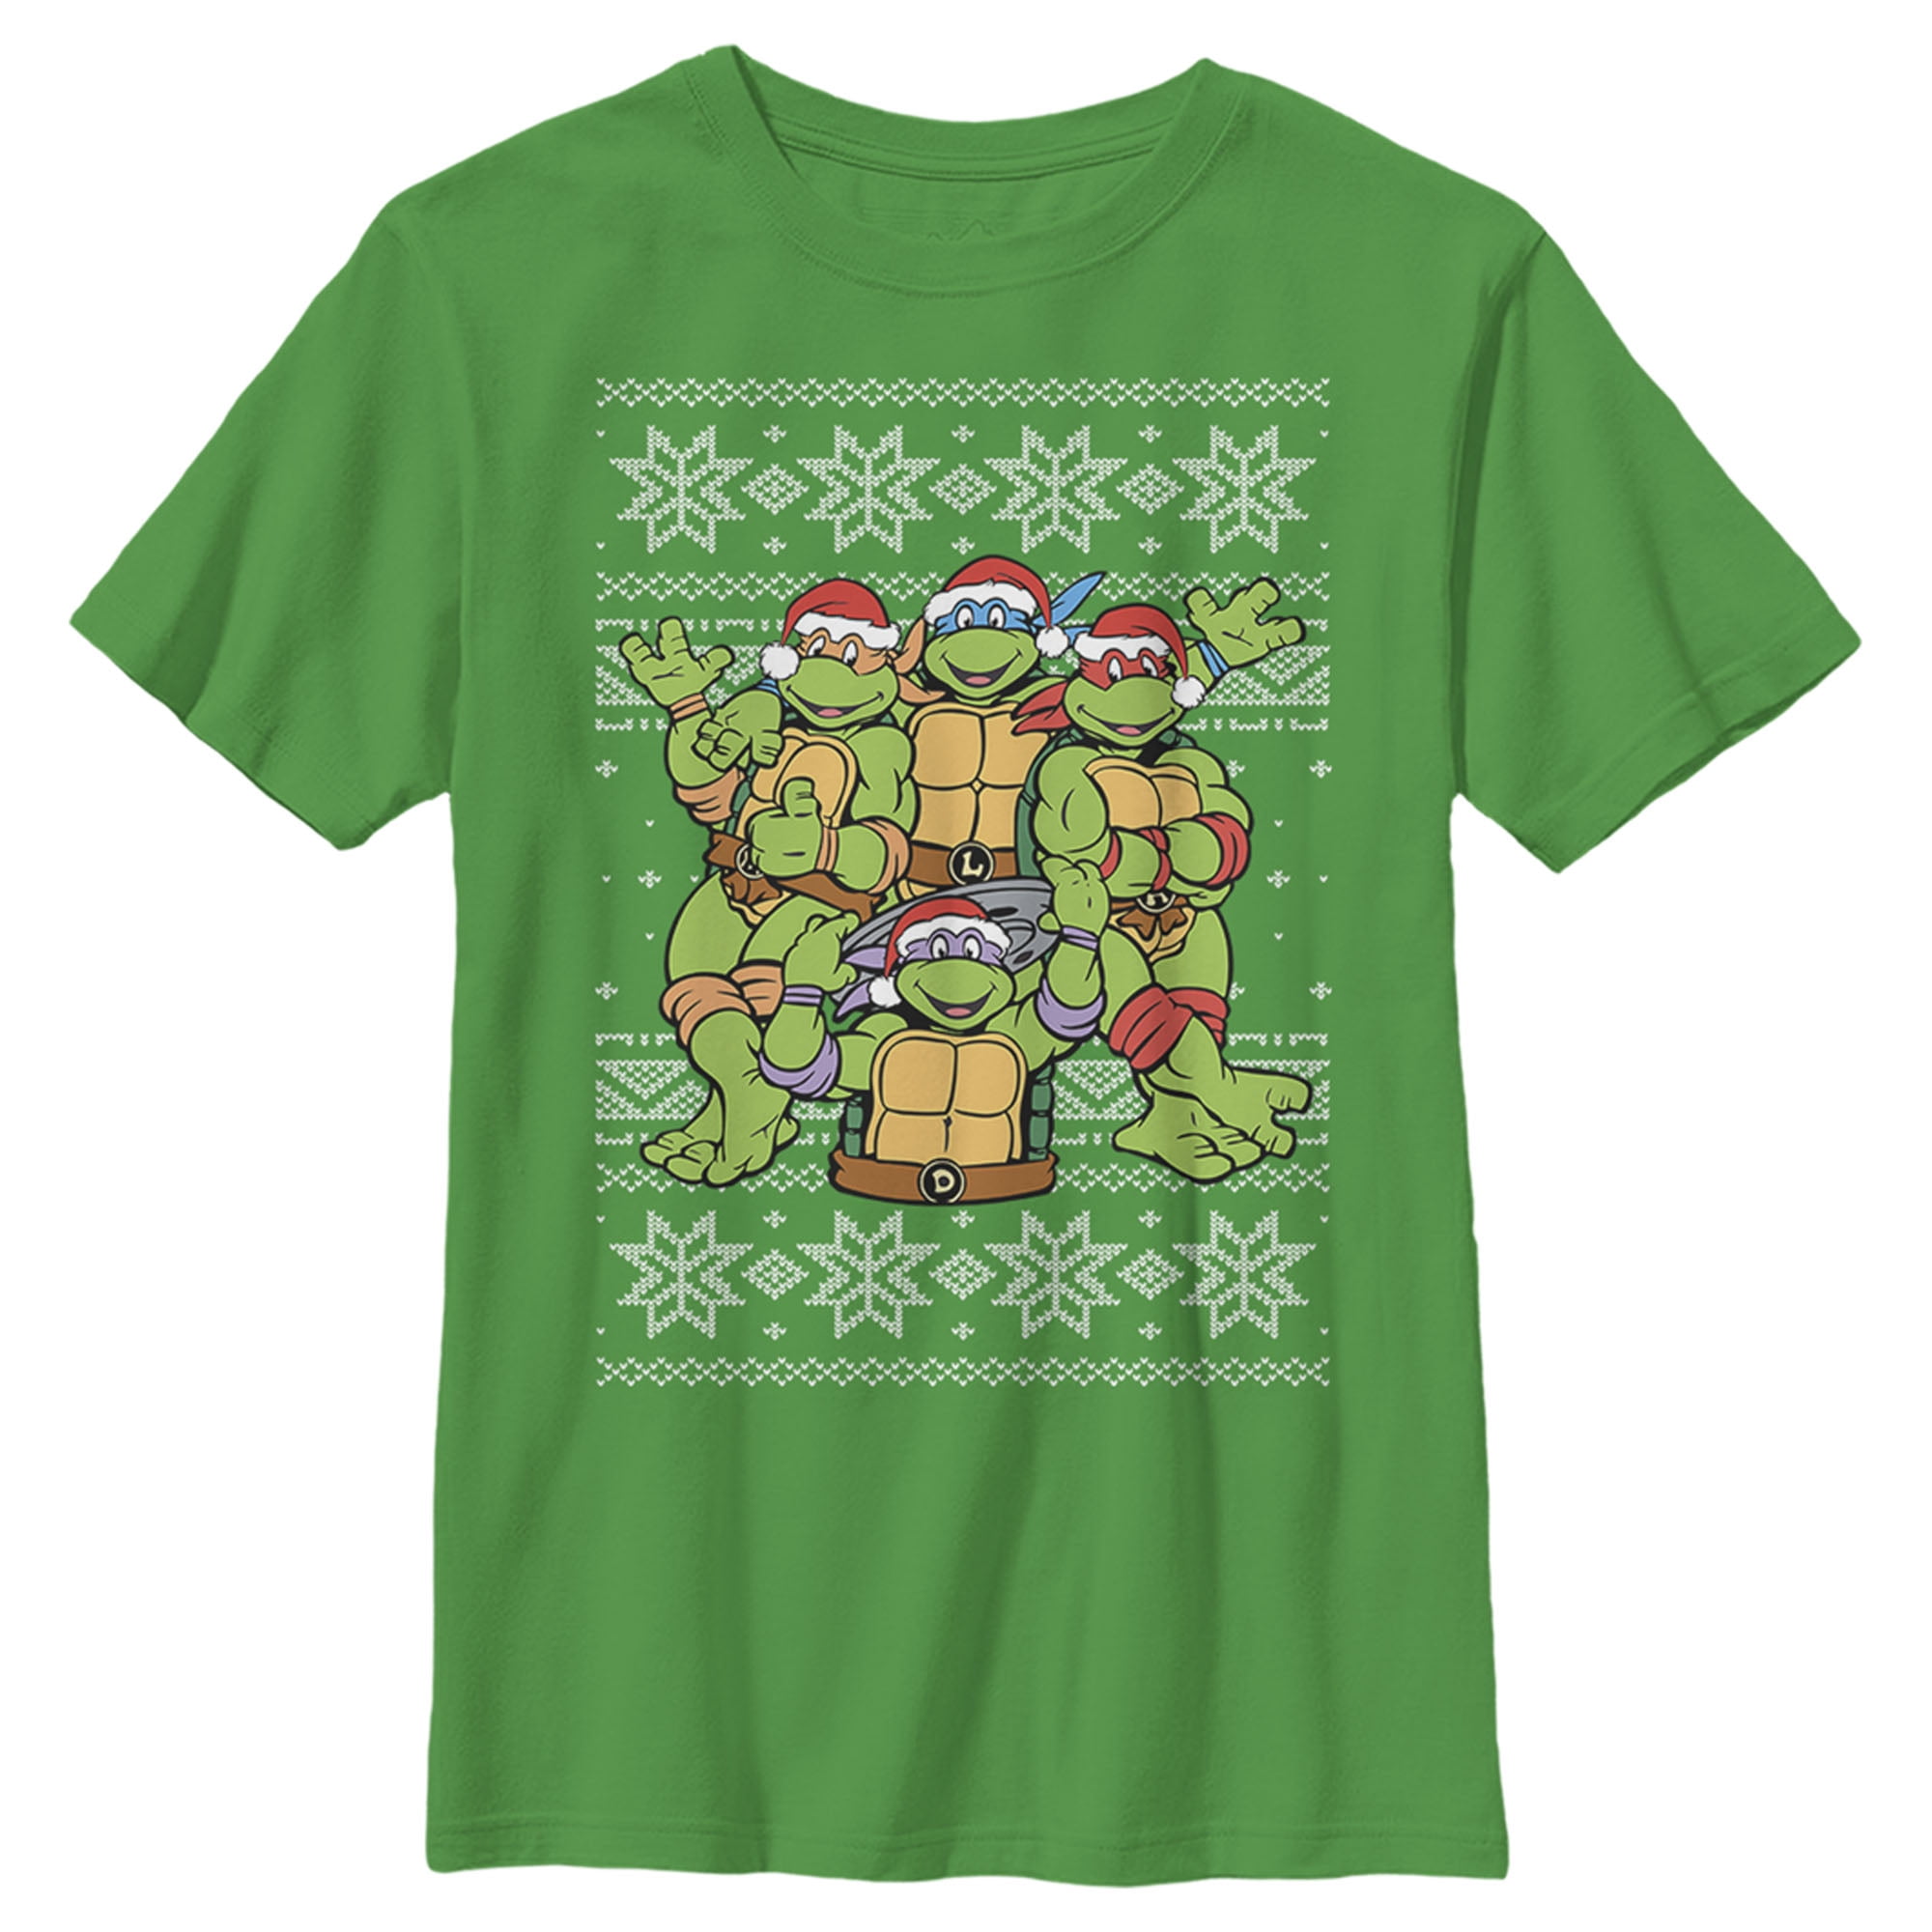 Teenage Mutant Ninja Turtles Family Christmas Pajamas Sets - Funny Ugly  Christmas Sweater